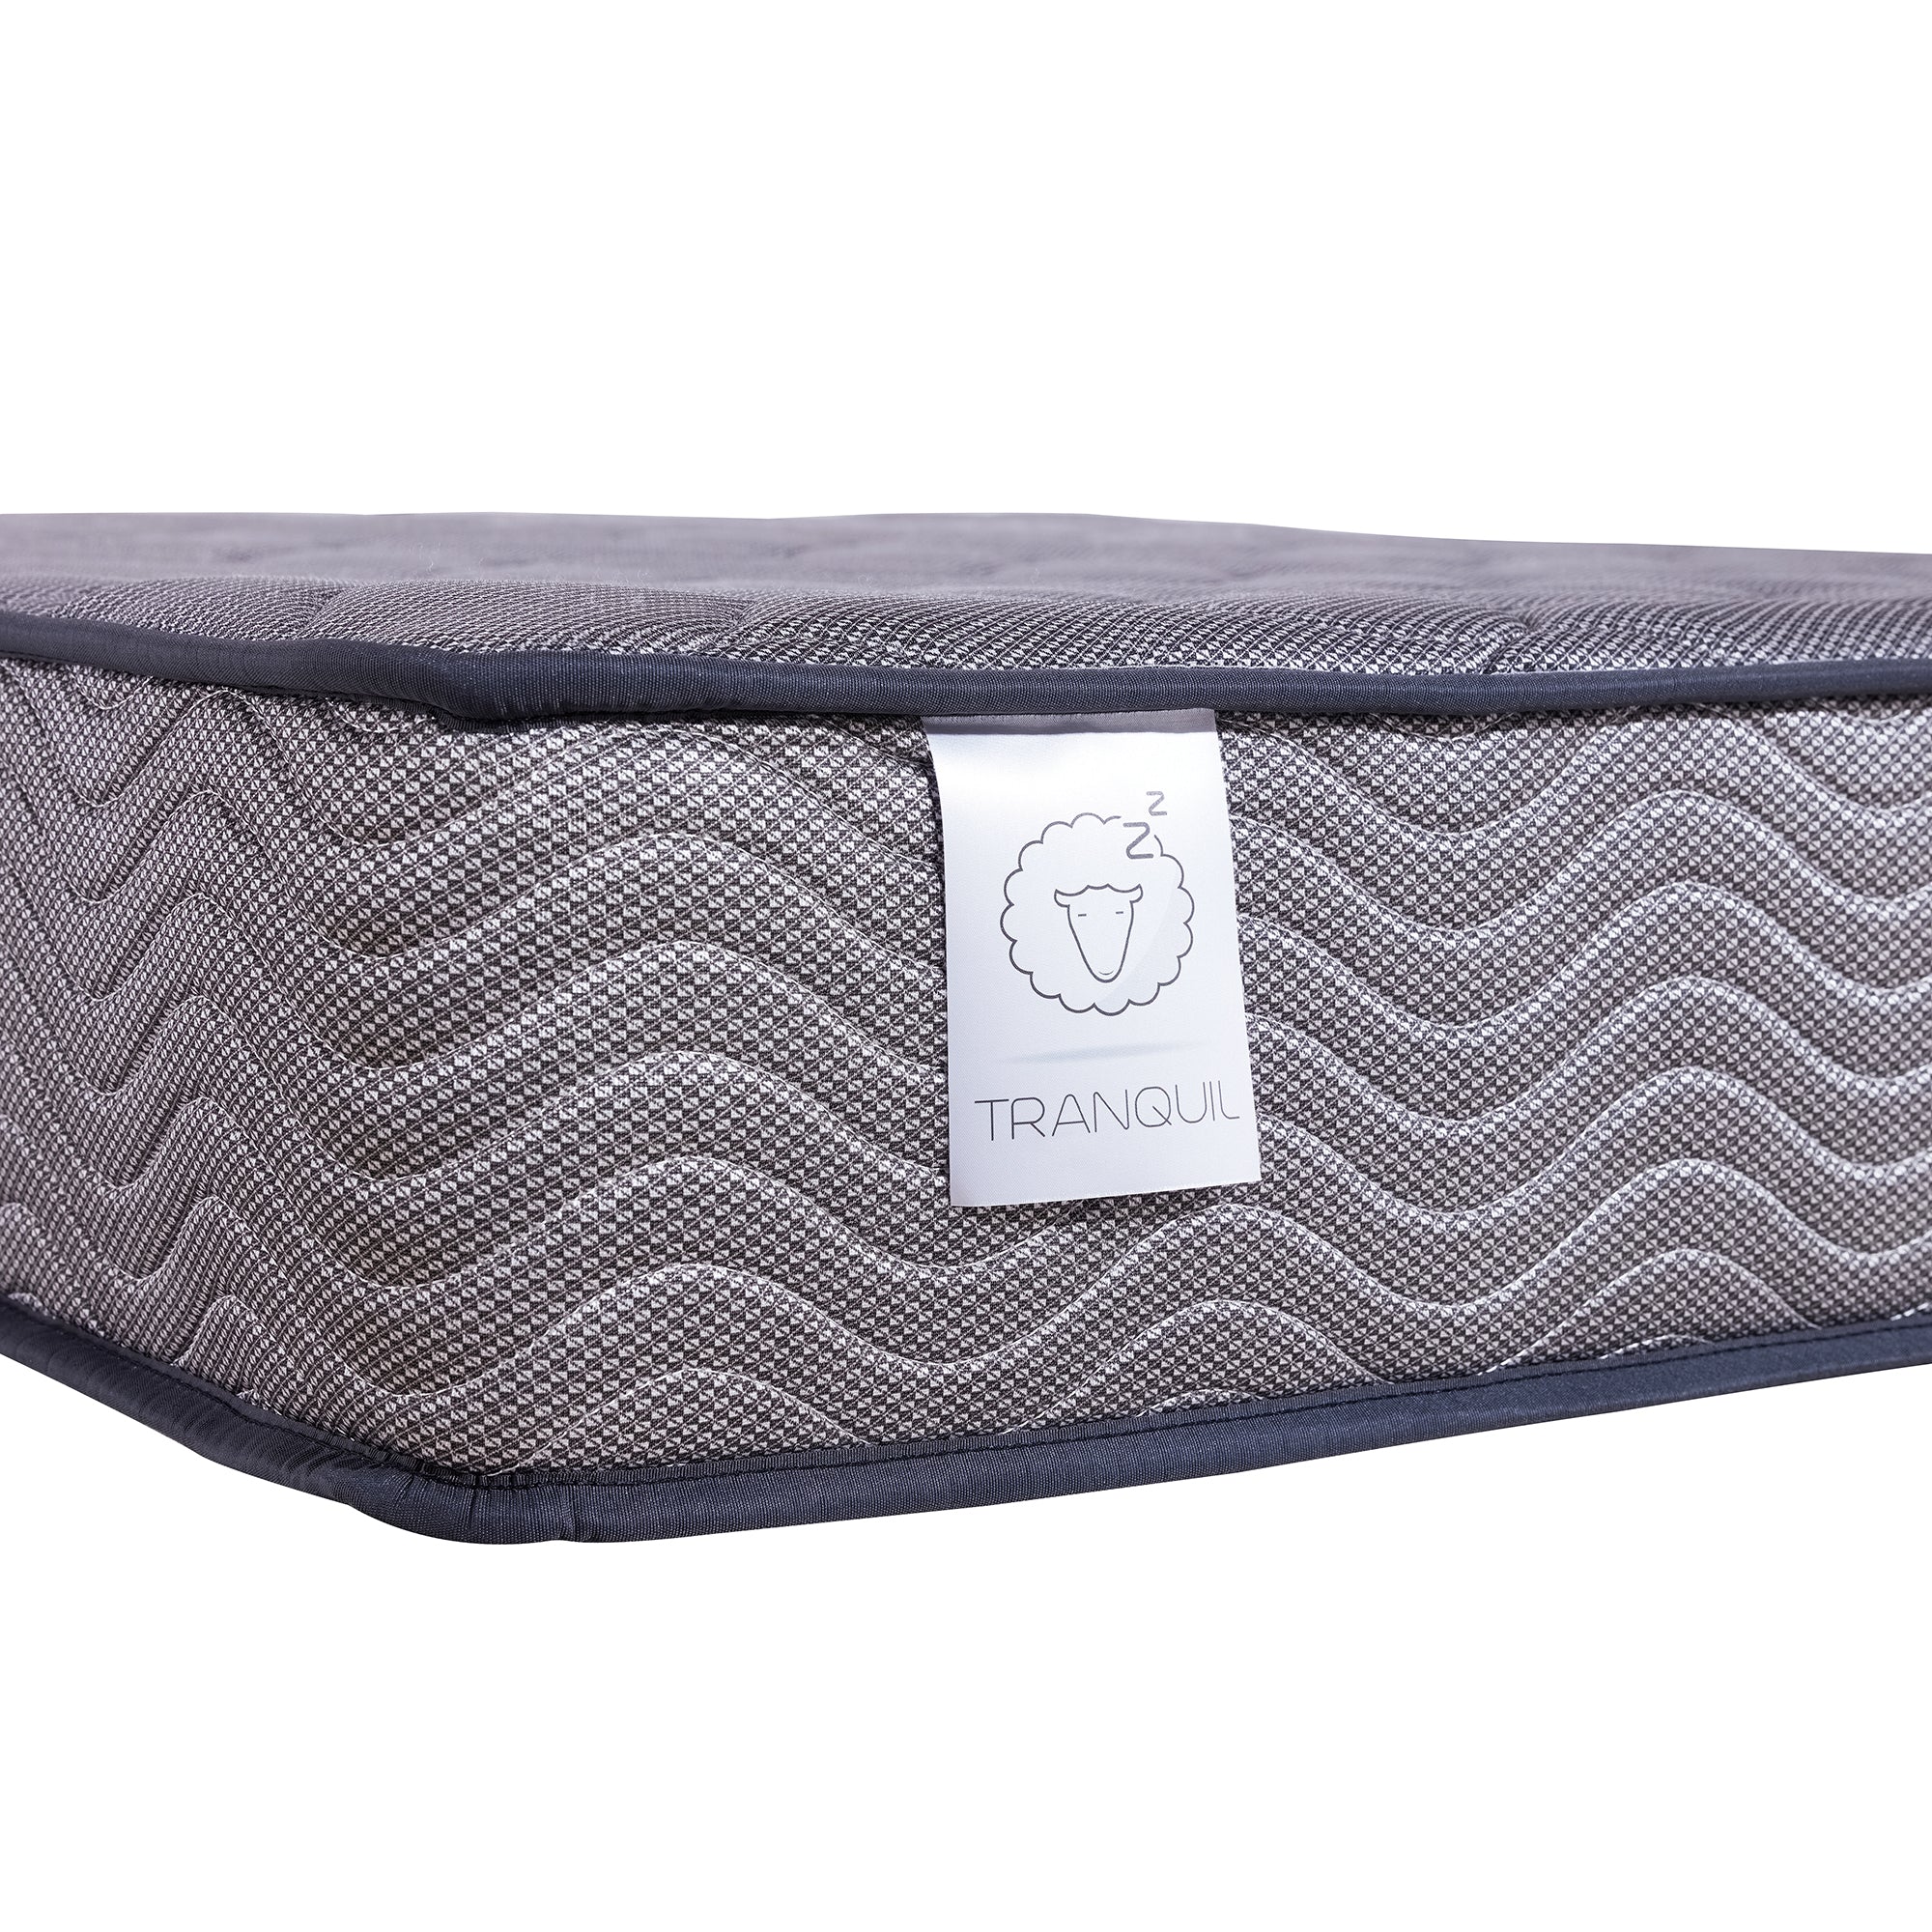 TRANQUIL Linden Pocket Sprung 5-Zone Luxe Rolled Mattress, Grey, Medium Firmness